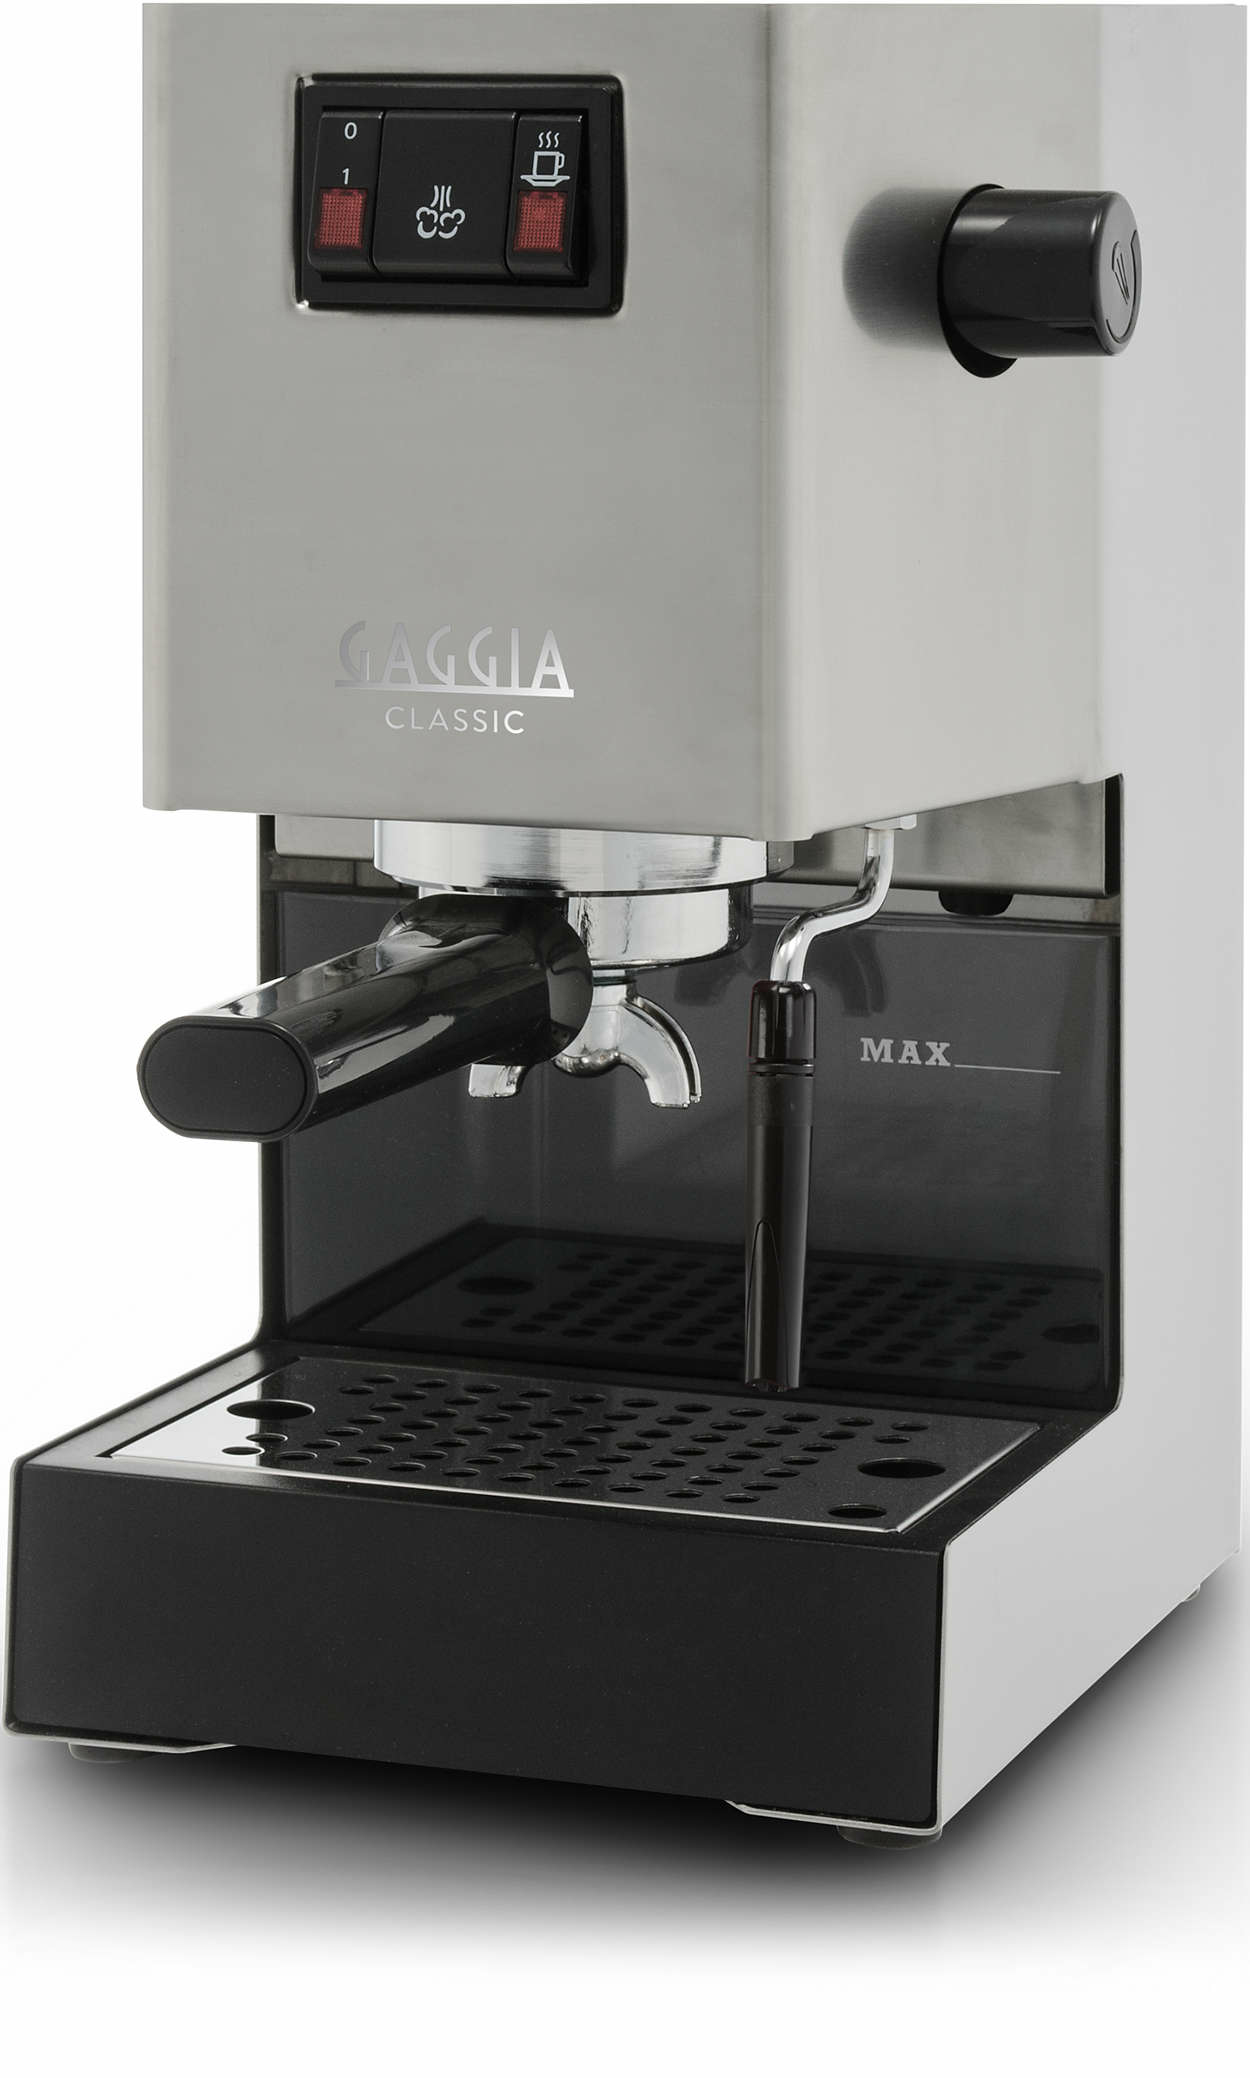 Gaggia RI9303/47 coffee maker